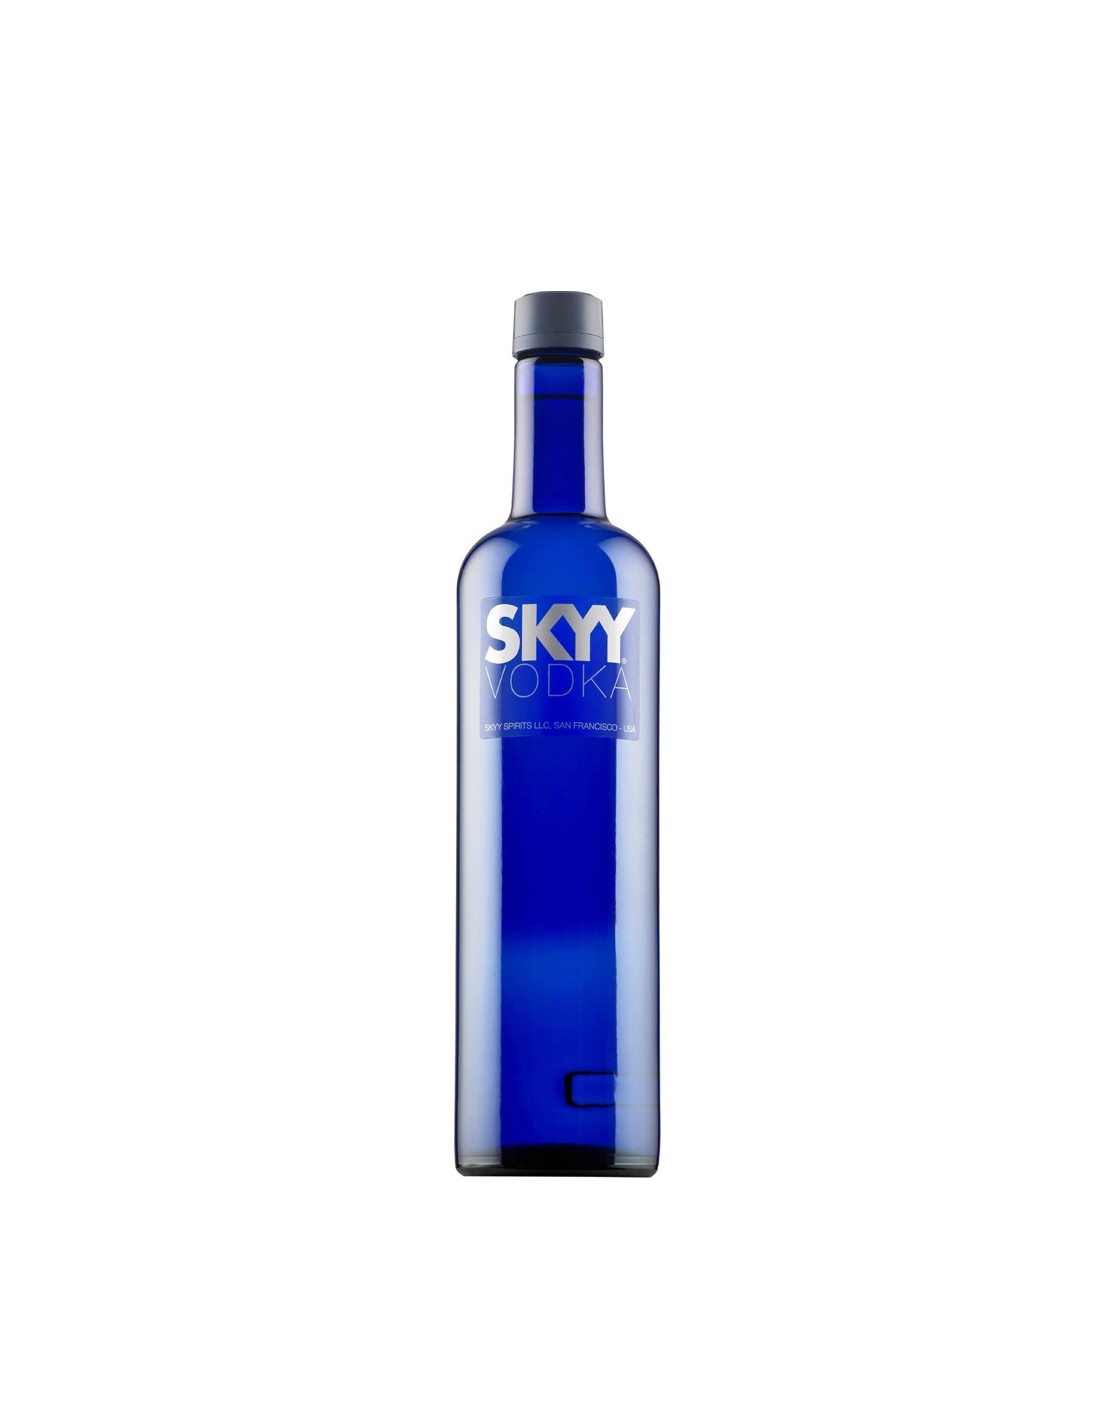 Vodca Skyy 0.7L, 40% alc. alcooldiscount.ro